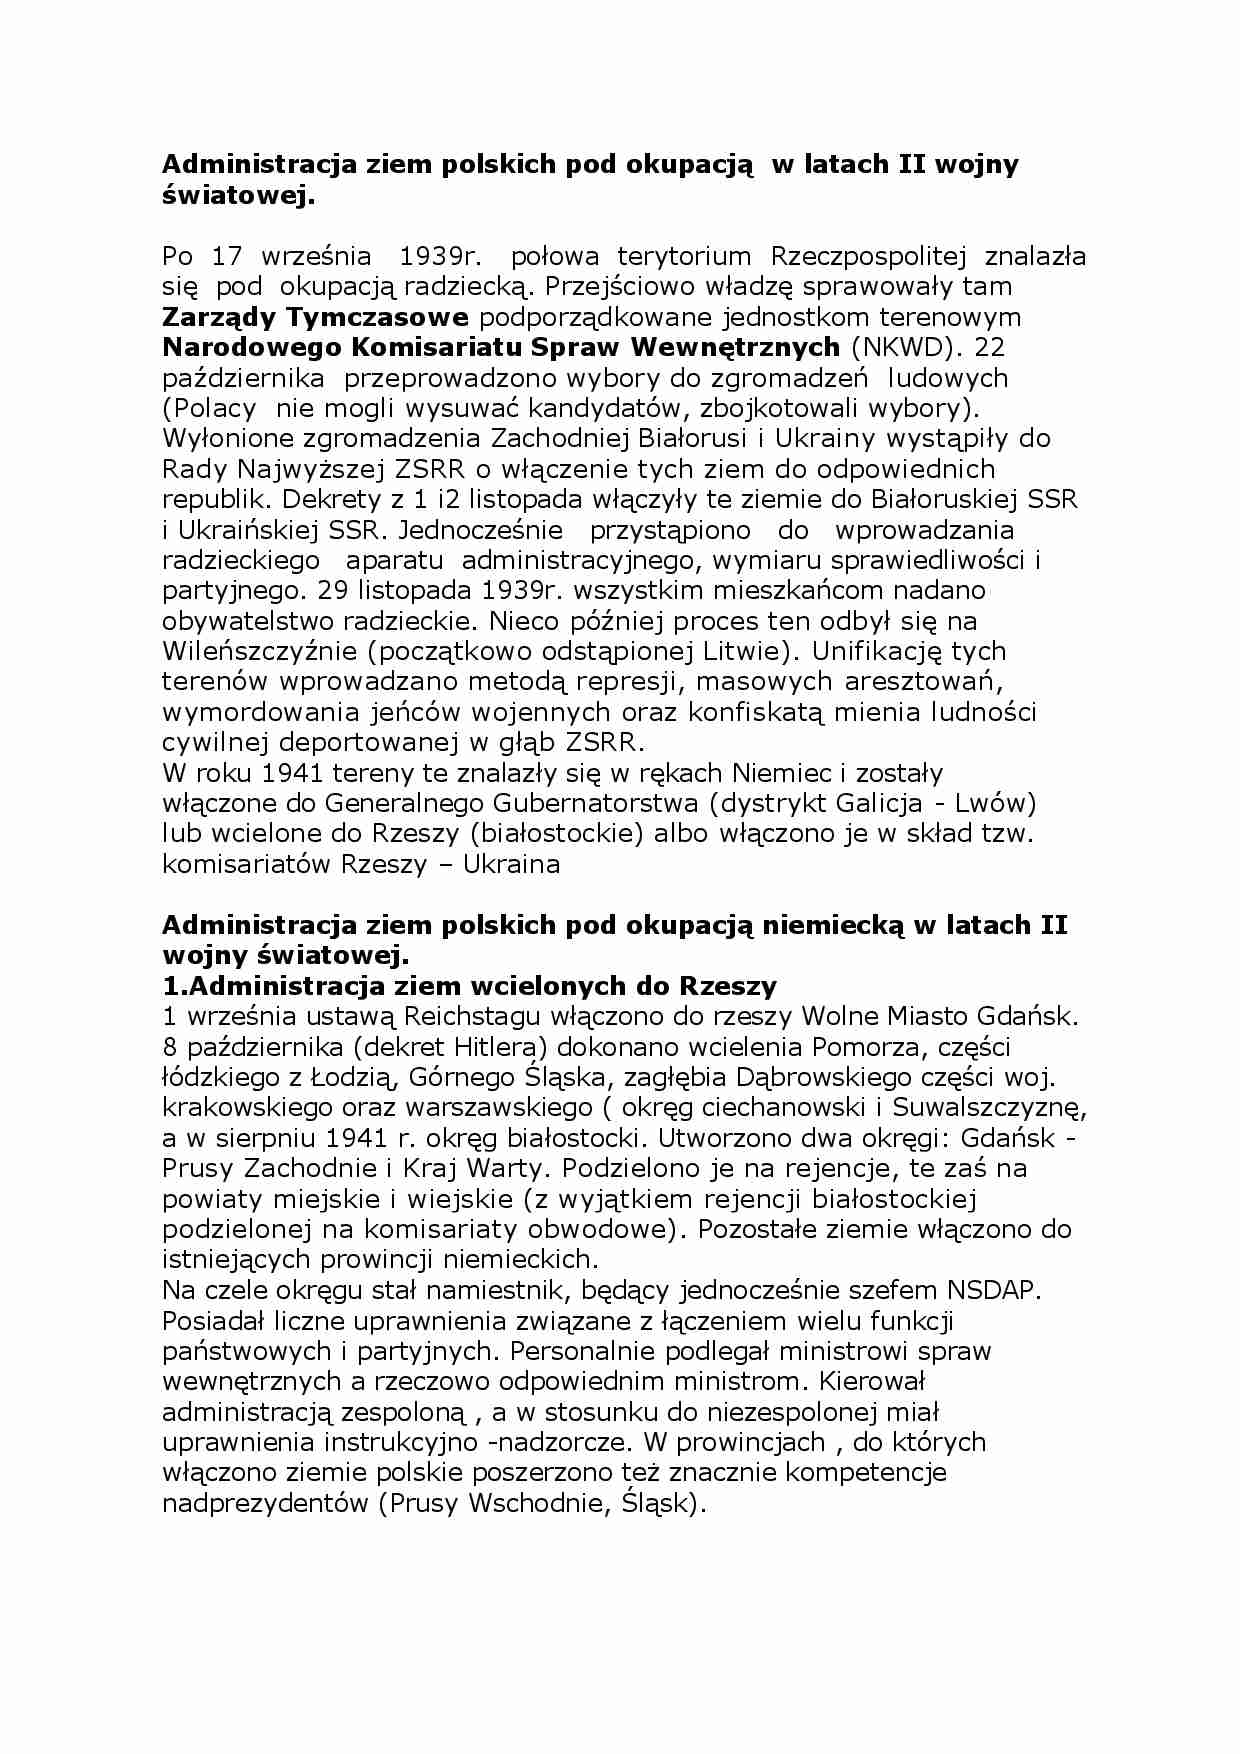 Administracja ziem polskich pod okupacją w latach II wojny światowej - strona 1